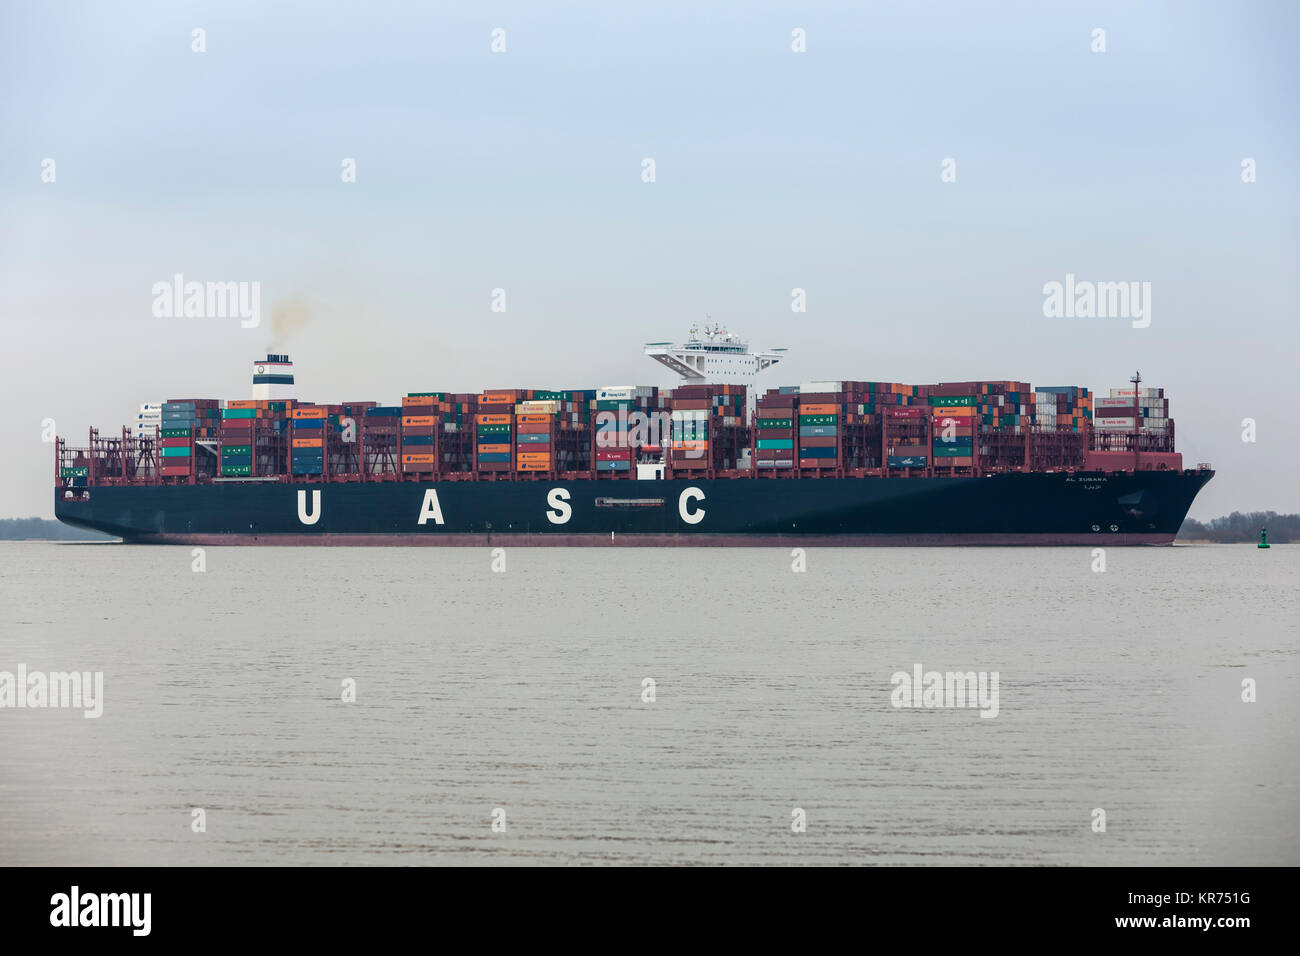 Hollern, Germania - 15 dicembre 2015: nave portacontainer AL ZUBARA sul fiume Elba. Il recipiente è gestito da United Arab Shipping Company che è di proprietà di Foto Stock